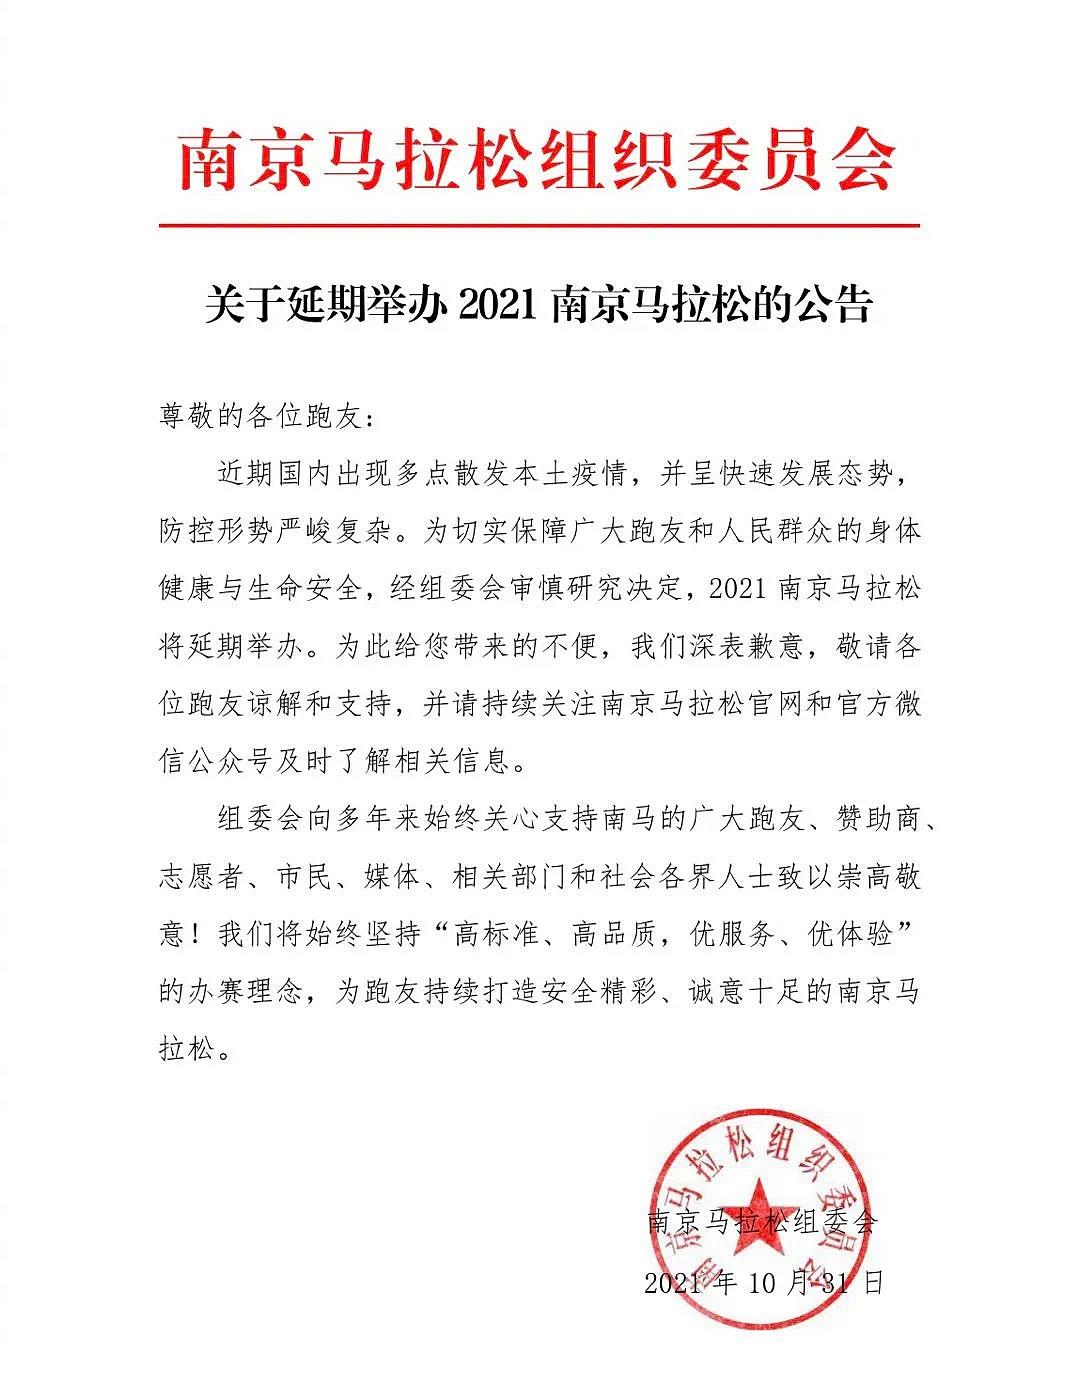 南京马拉松组委会：2021南京马拉松延期举办